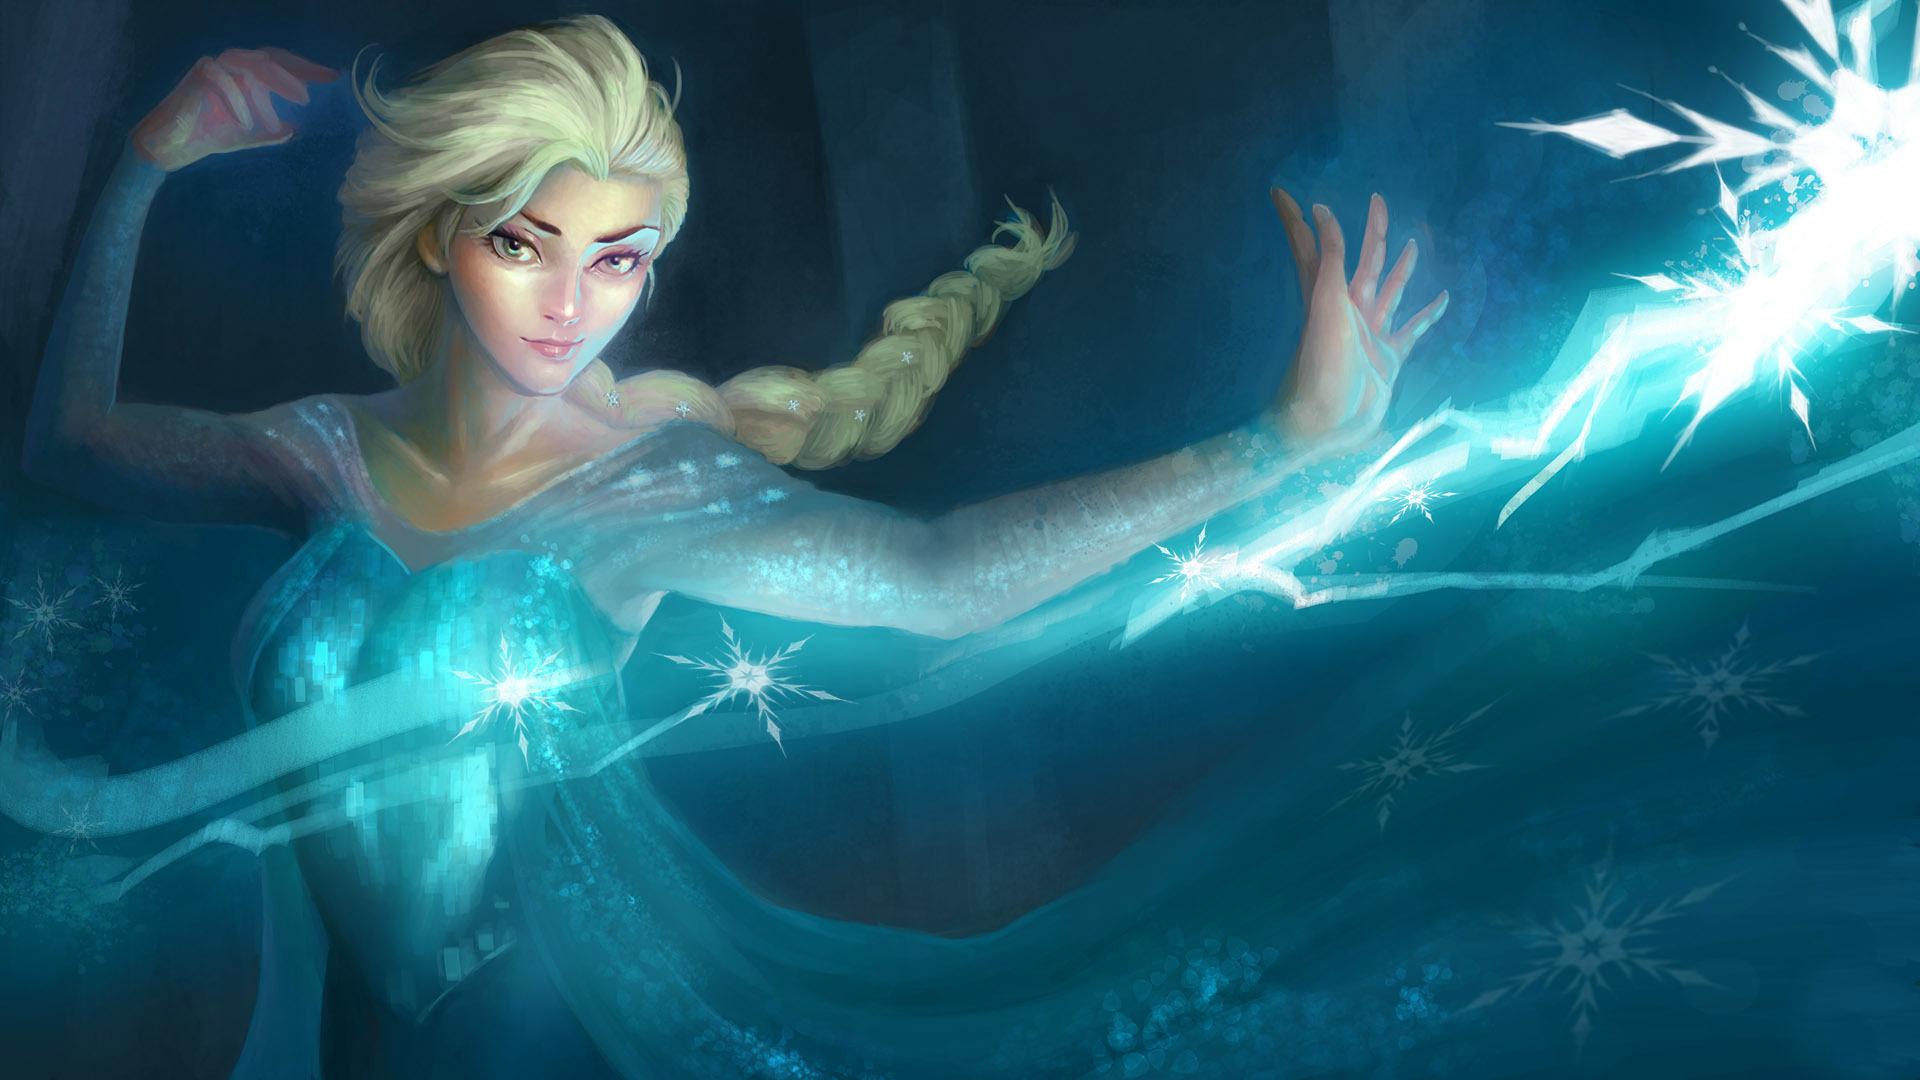 Dancing Elsa - Frozen HD desktop wallpaper : Widescreen : High ...